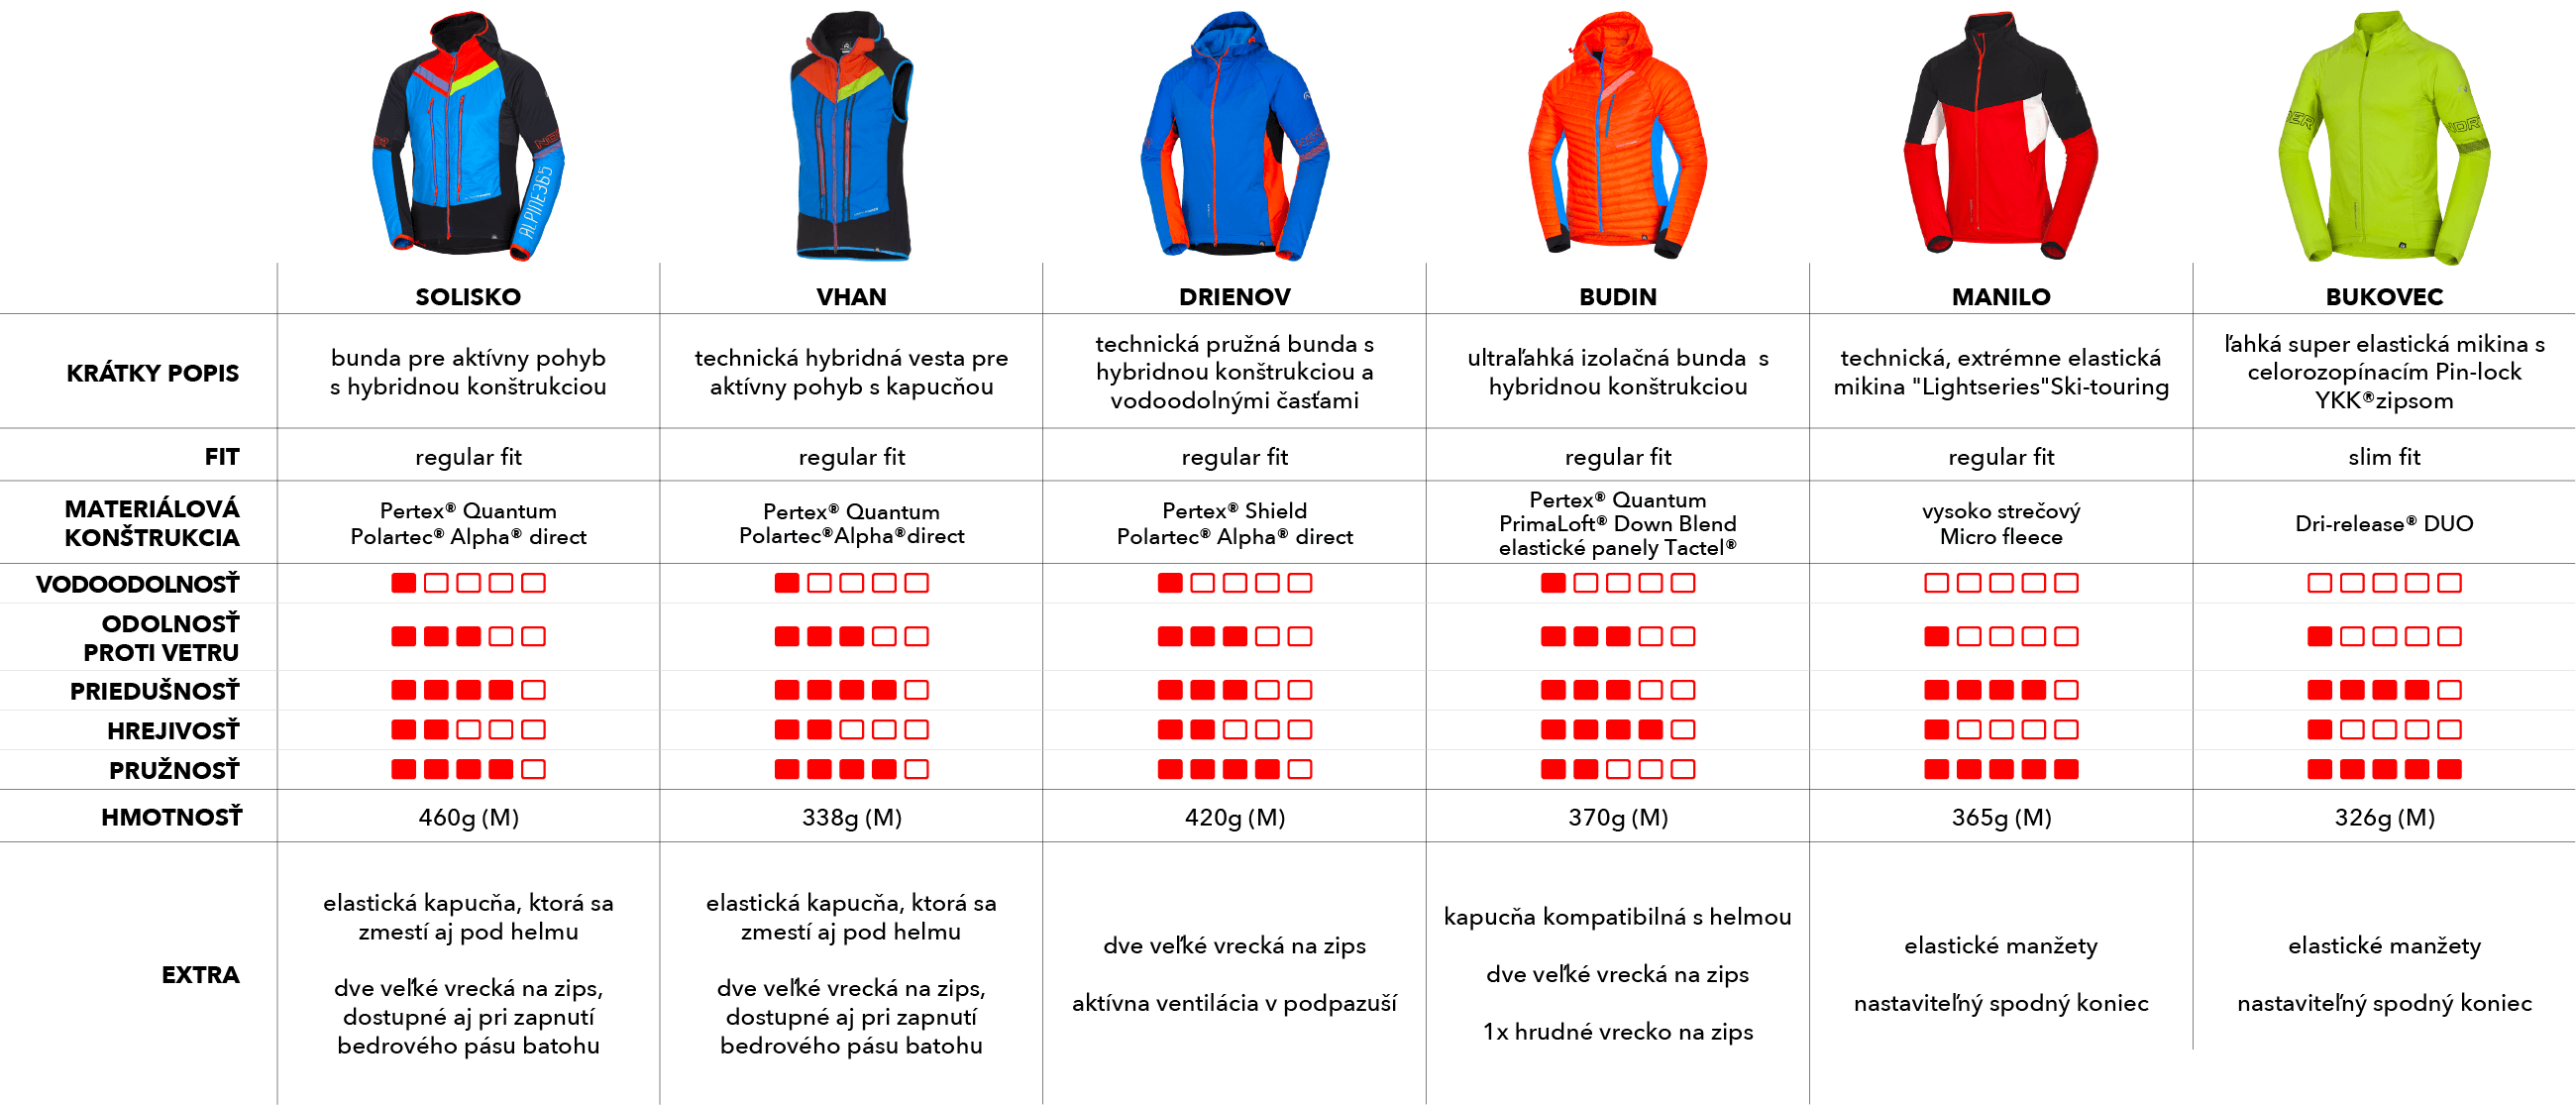 porovnanie ski-touring kolekcie - bundy a mikiny